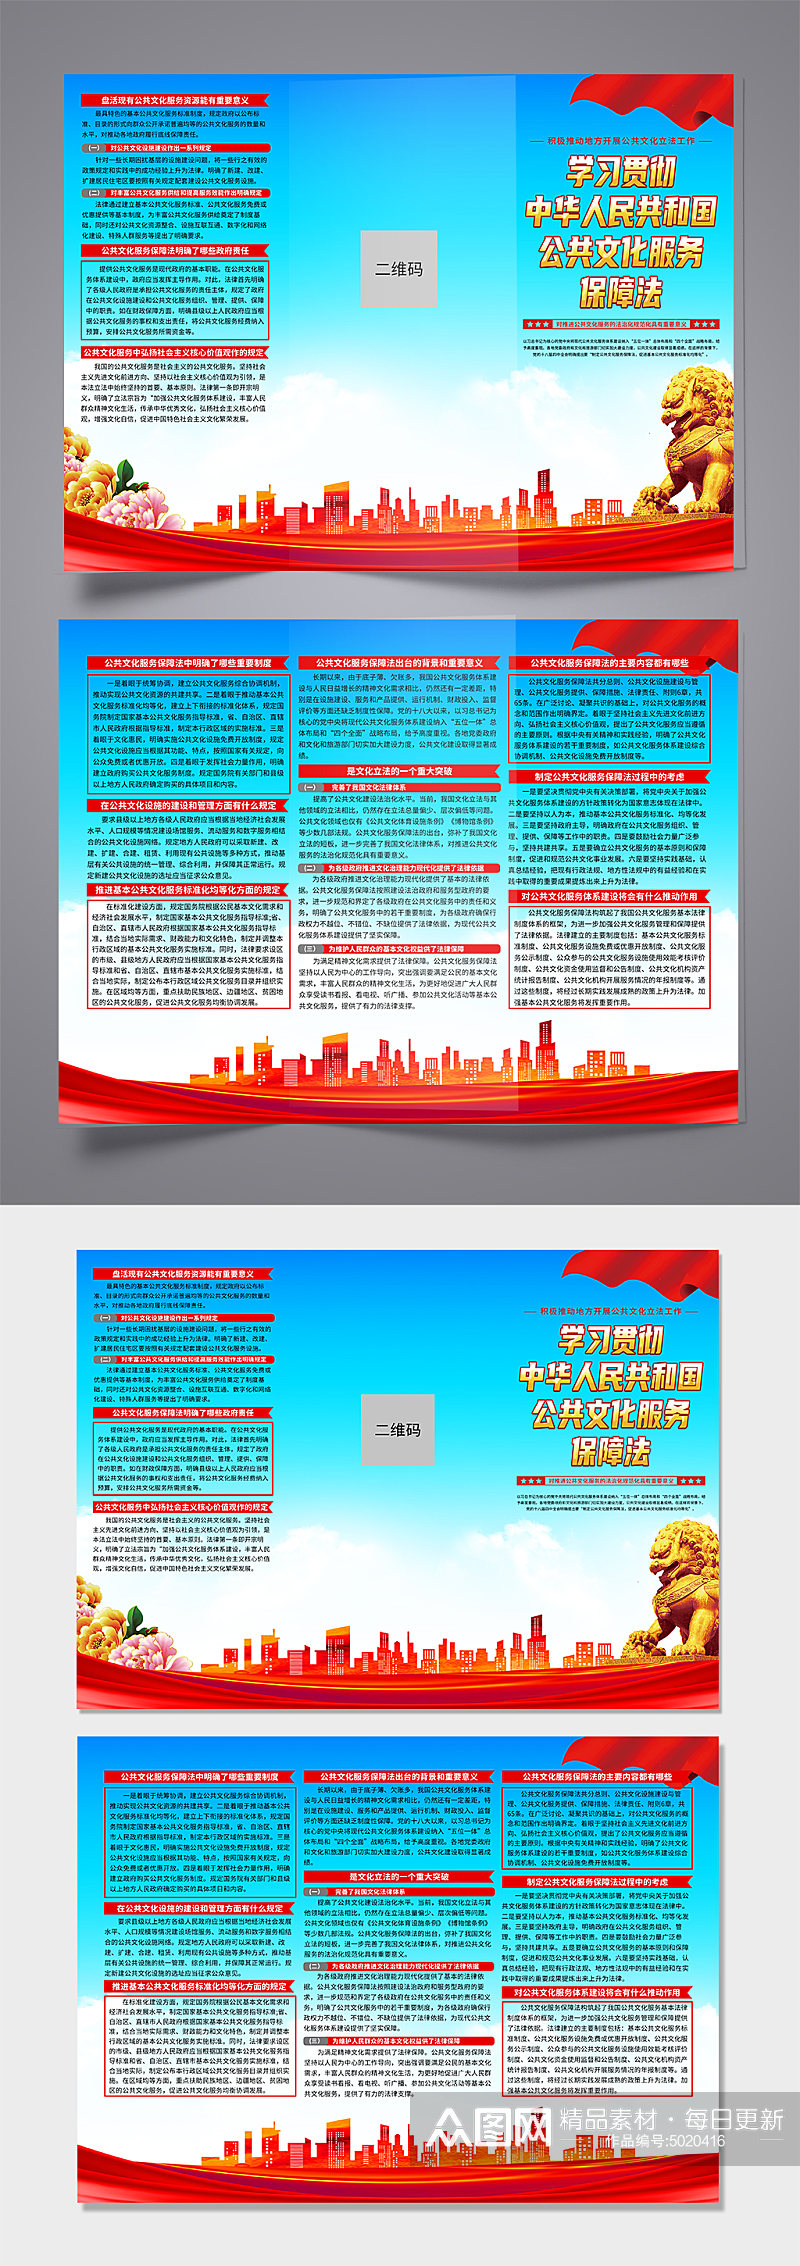 高档中华人民共和国公共文化服务保障法折页素材